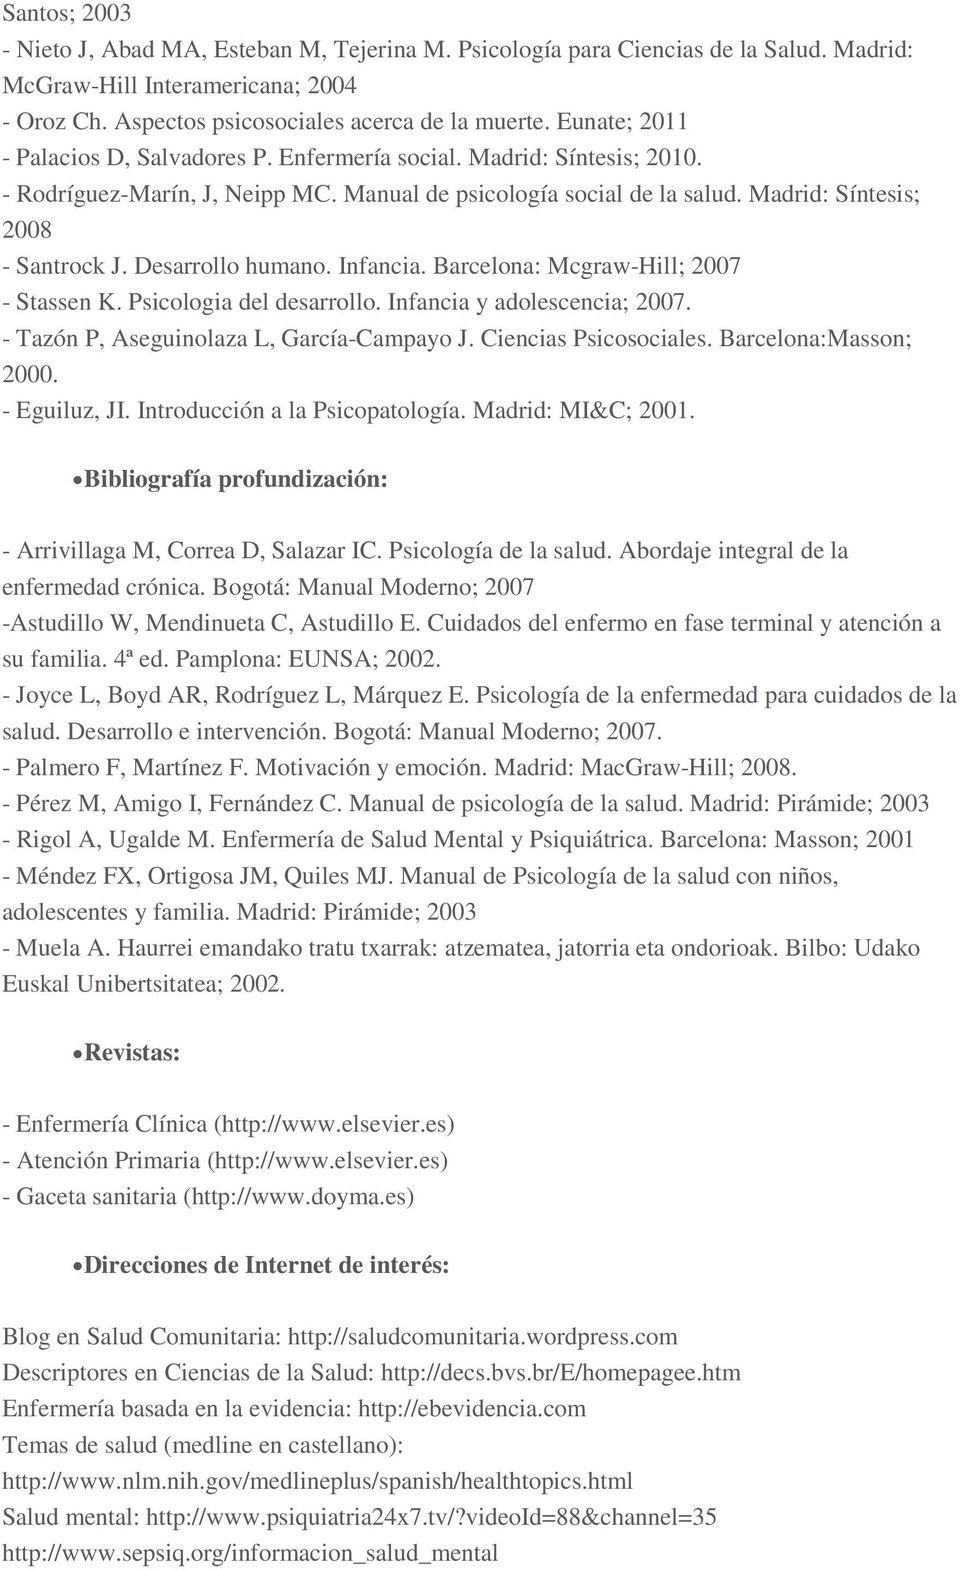 Desarrollo humano. Infancia. Barcelona: Mcgraw-Hill; 2007 - Stassen K. Psicologia del desarrollo. Infancia y adolescencia; 2007. - Tazón P, Aseguinolaza L, García-Campayo J. Ciencias Psicosociales.